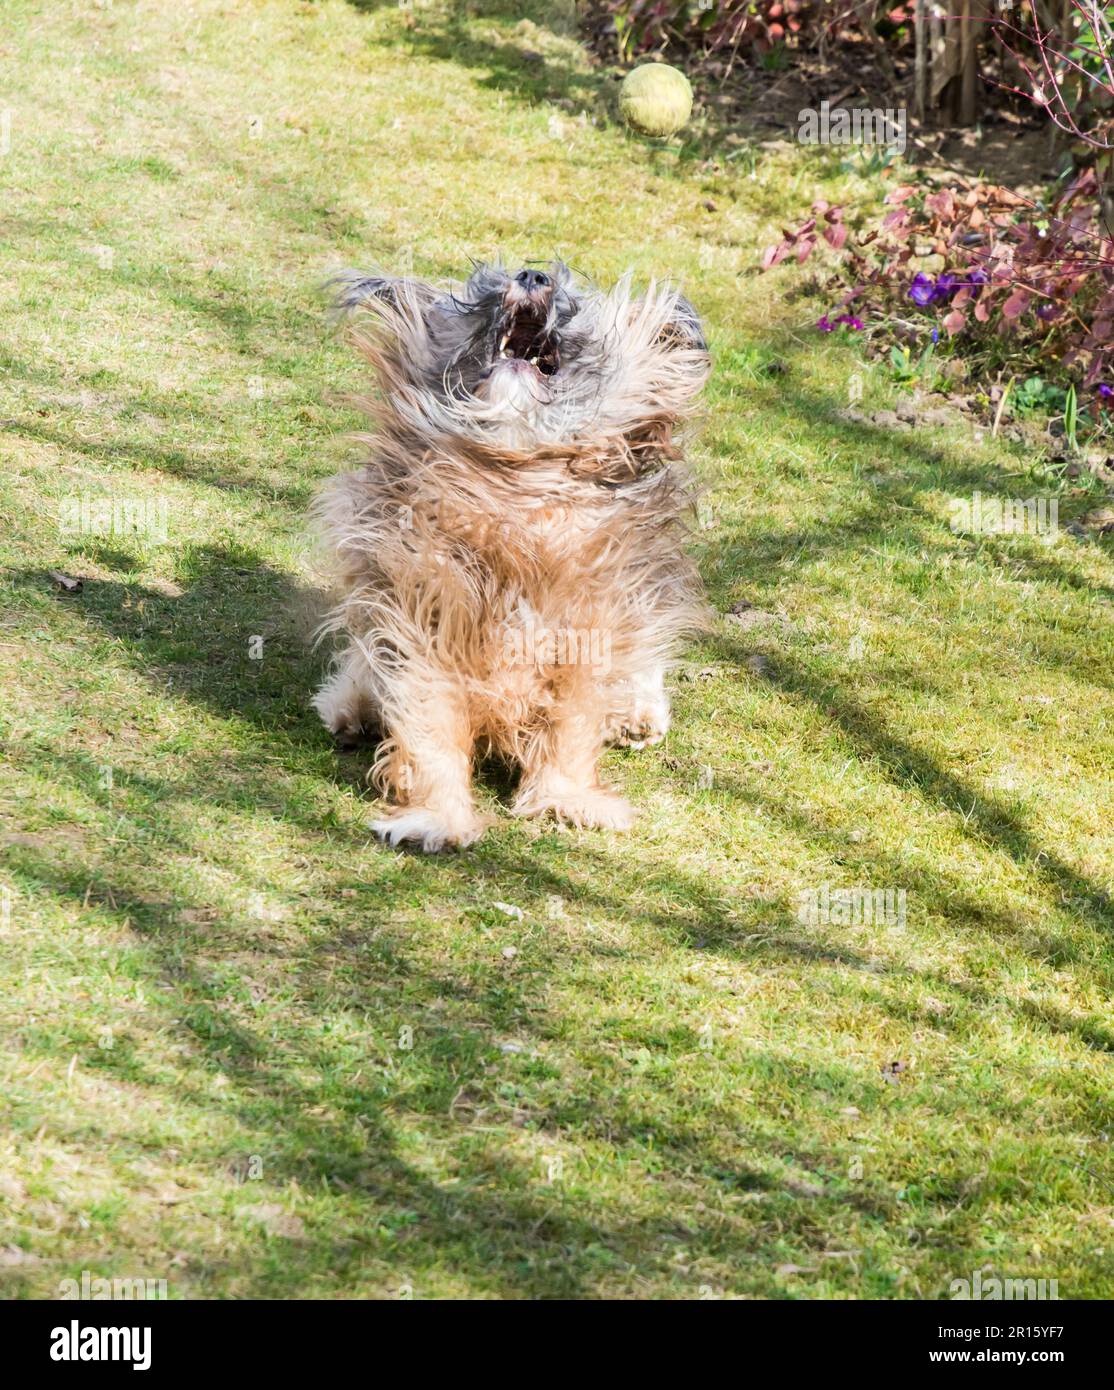 Tibetan terrier dog catching a ball Stock Photo